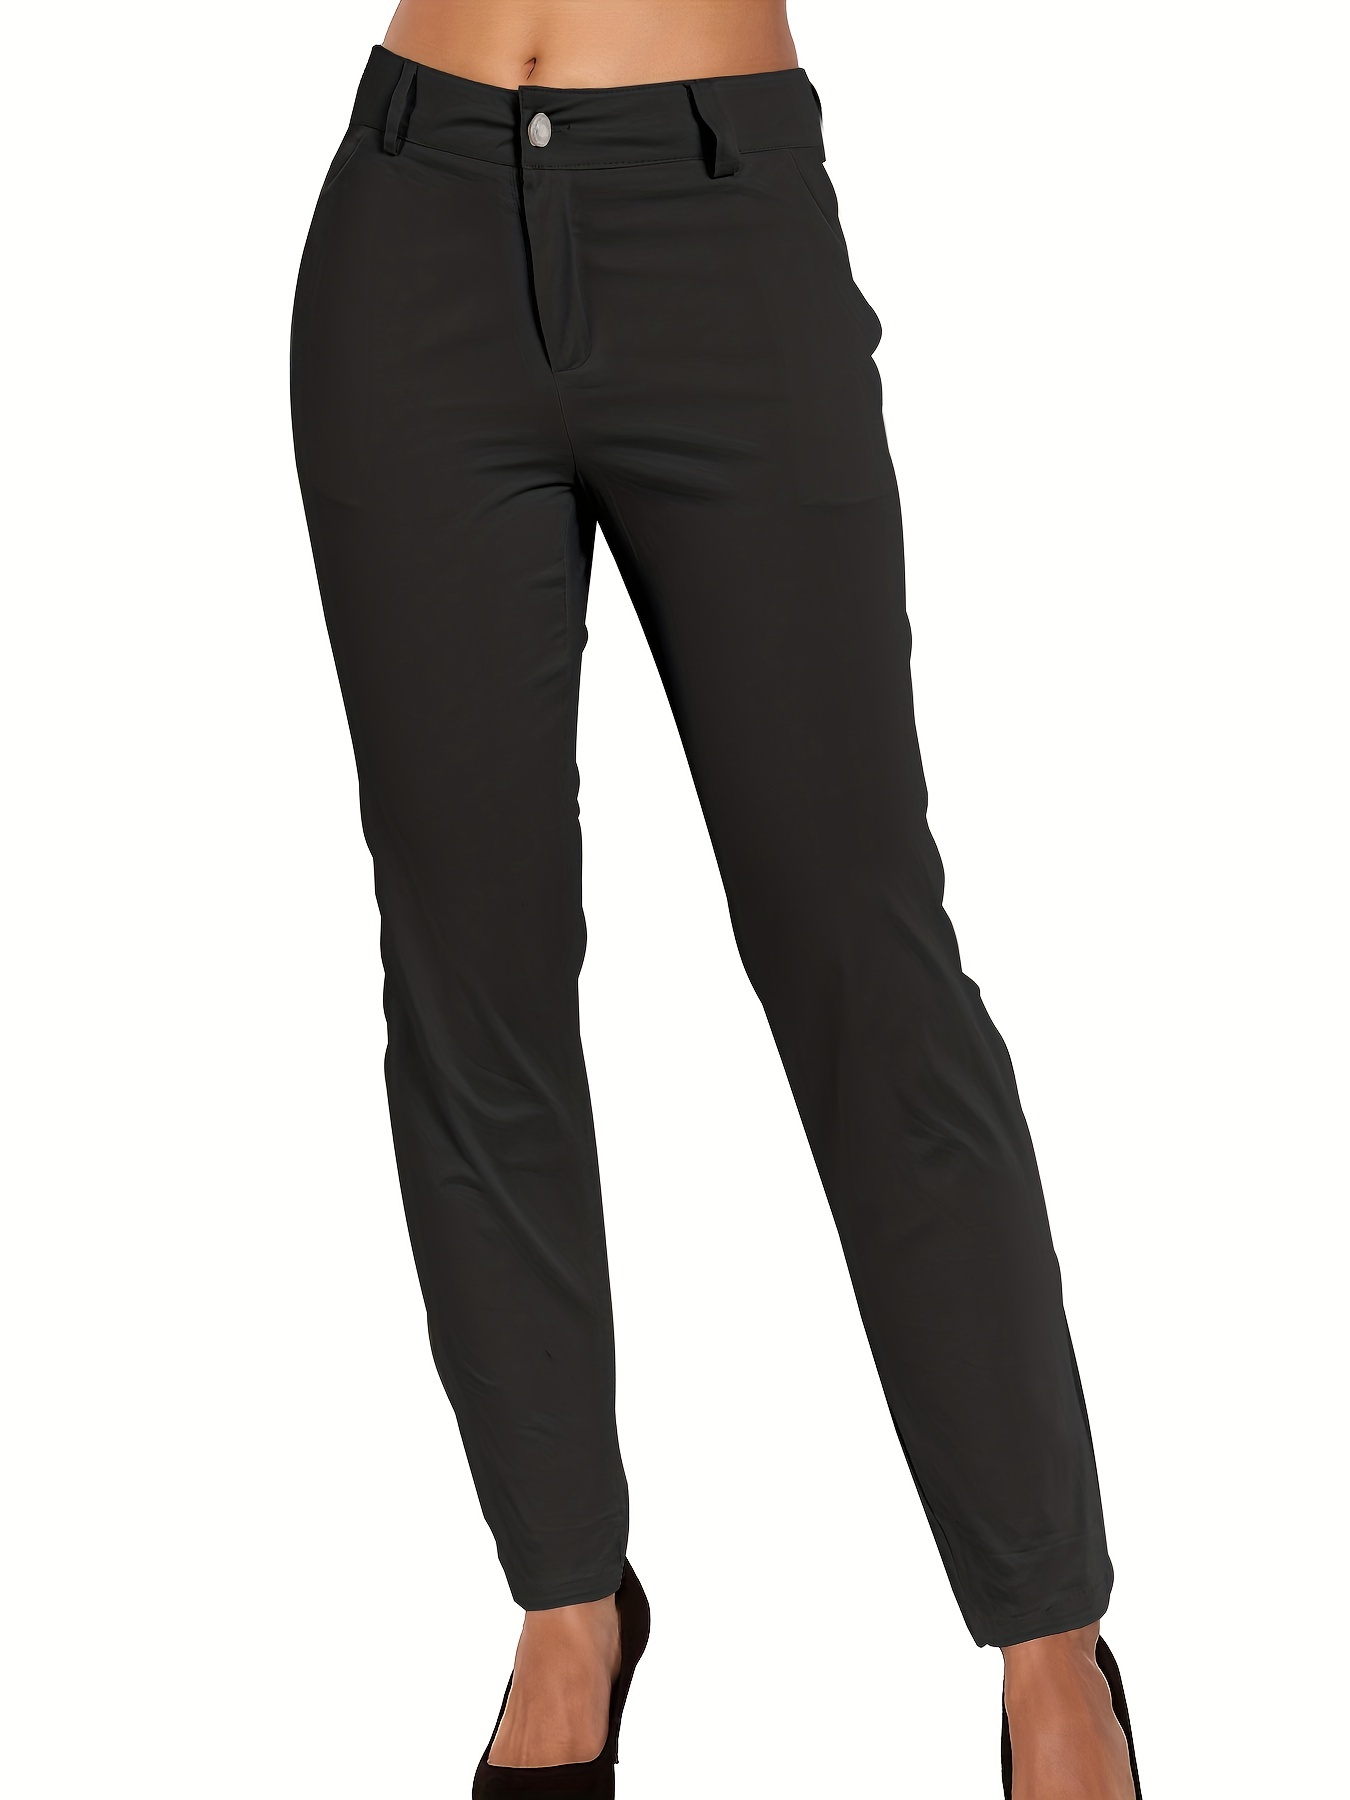 Black Trousers For Women - Pants for Women, Black Slacks & Work Pants